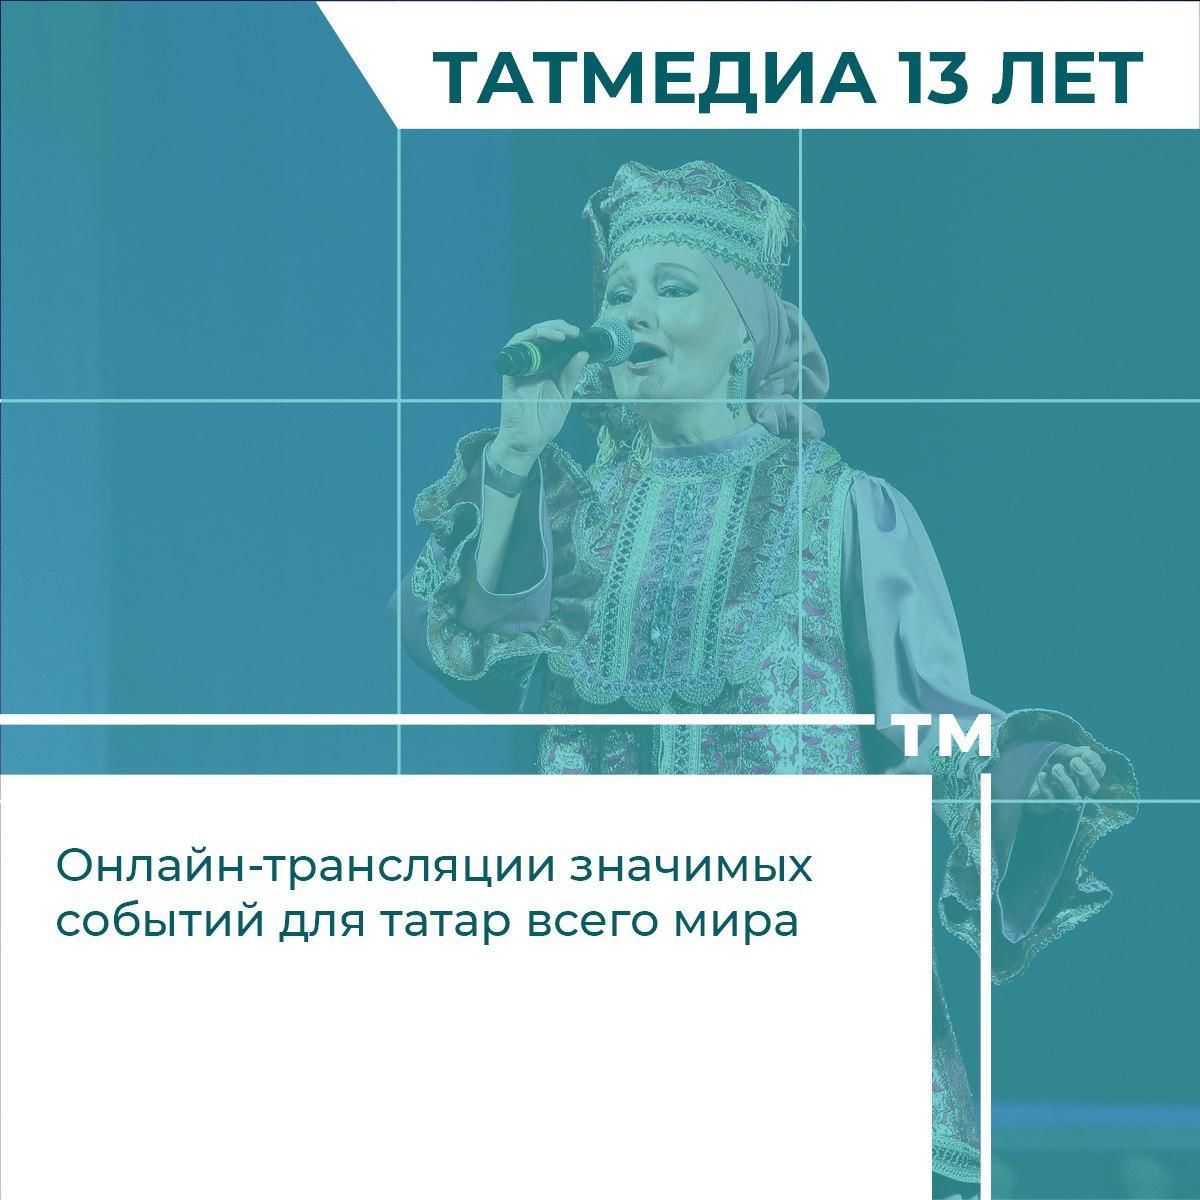 К 13-летию медиахолдинга «Татмедиа» рассказали о 13 фактах о нем